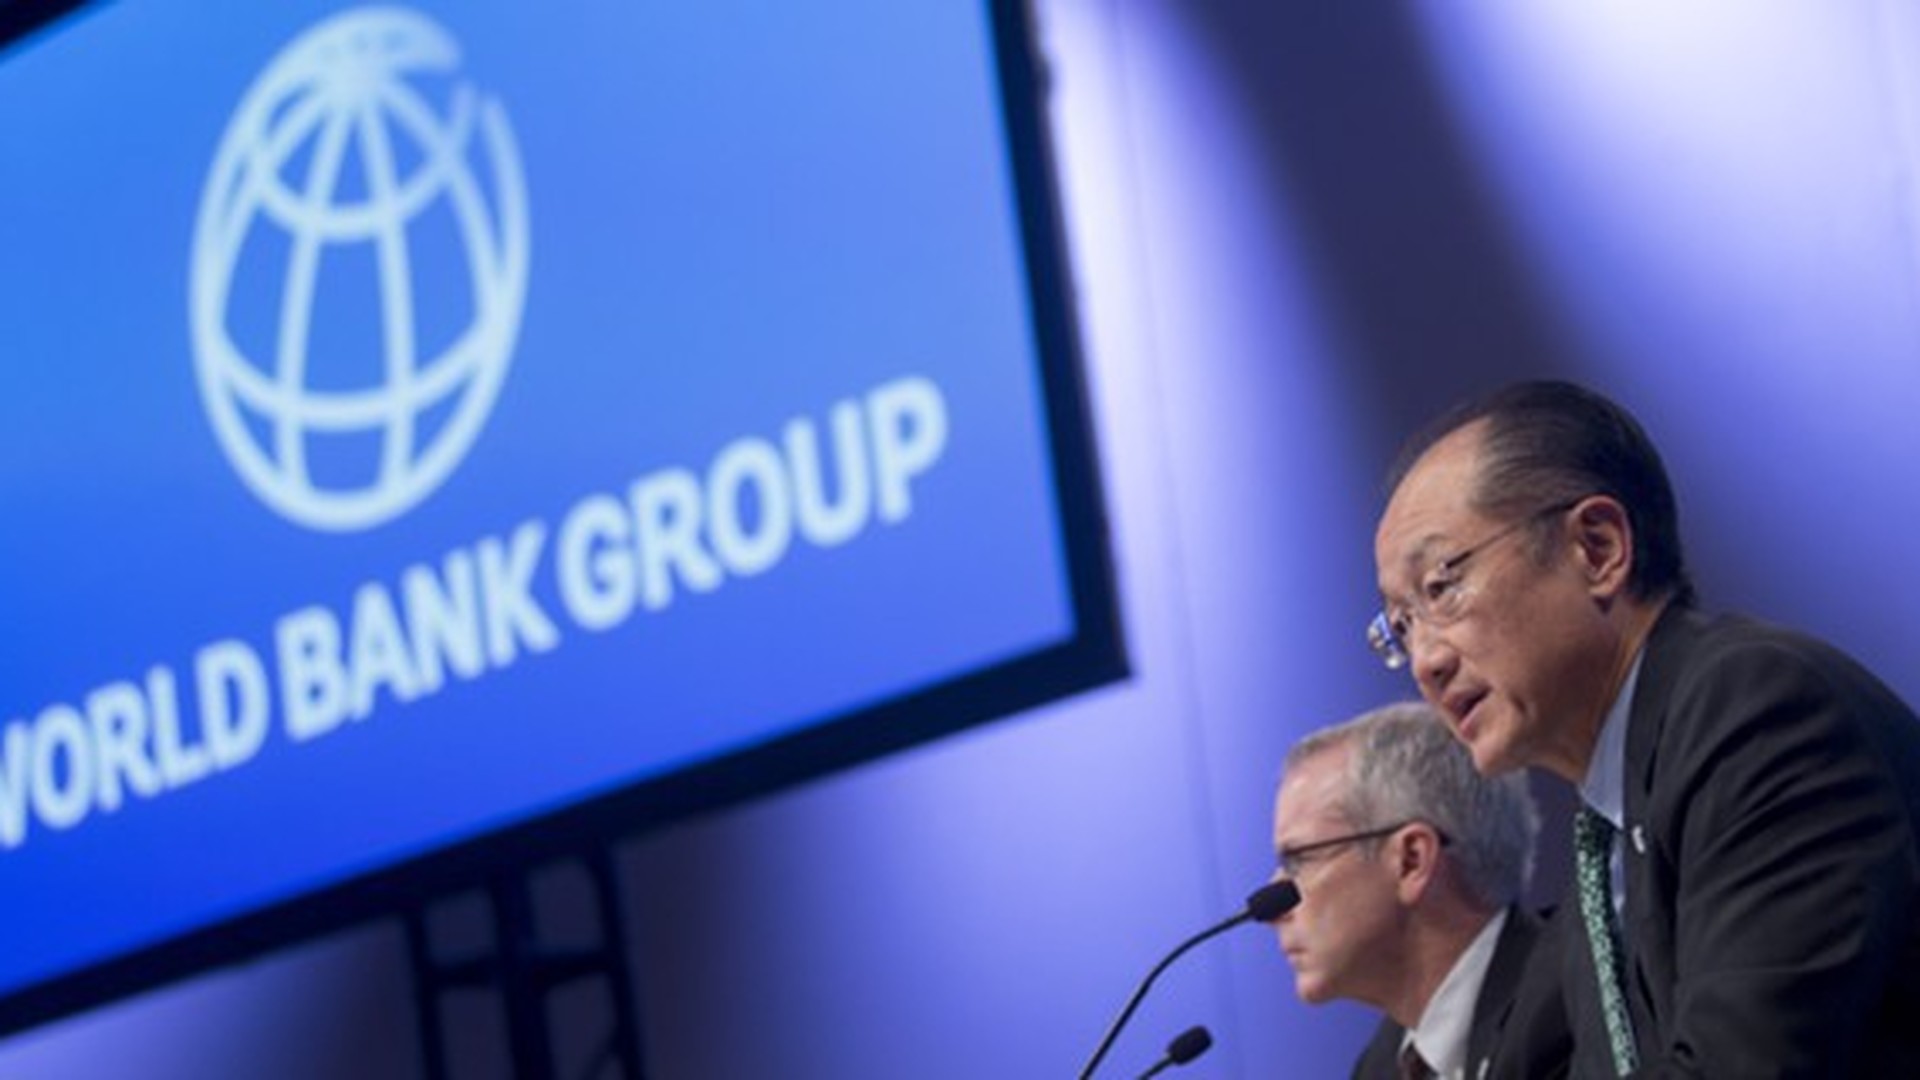 Сайт всемирного банка. Всемирный банк. Группа Всемирного банка фото. Группа Всемирного банка ООН. Флаг Всемирного банка.